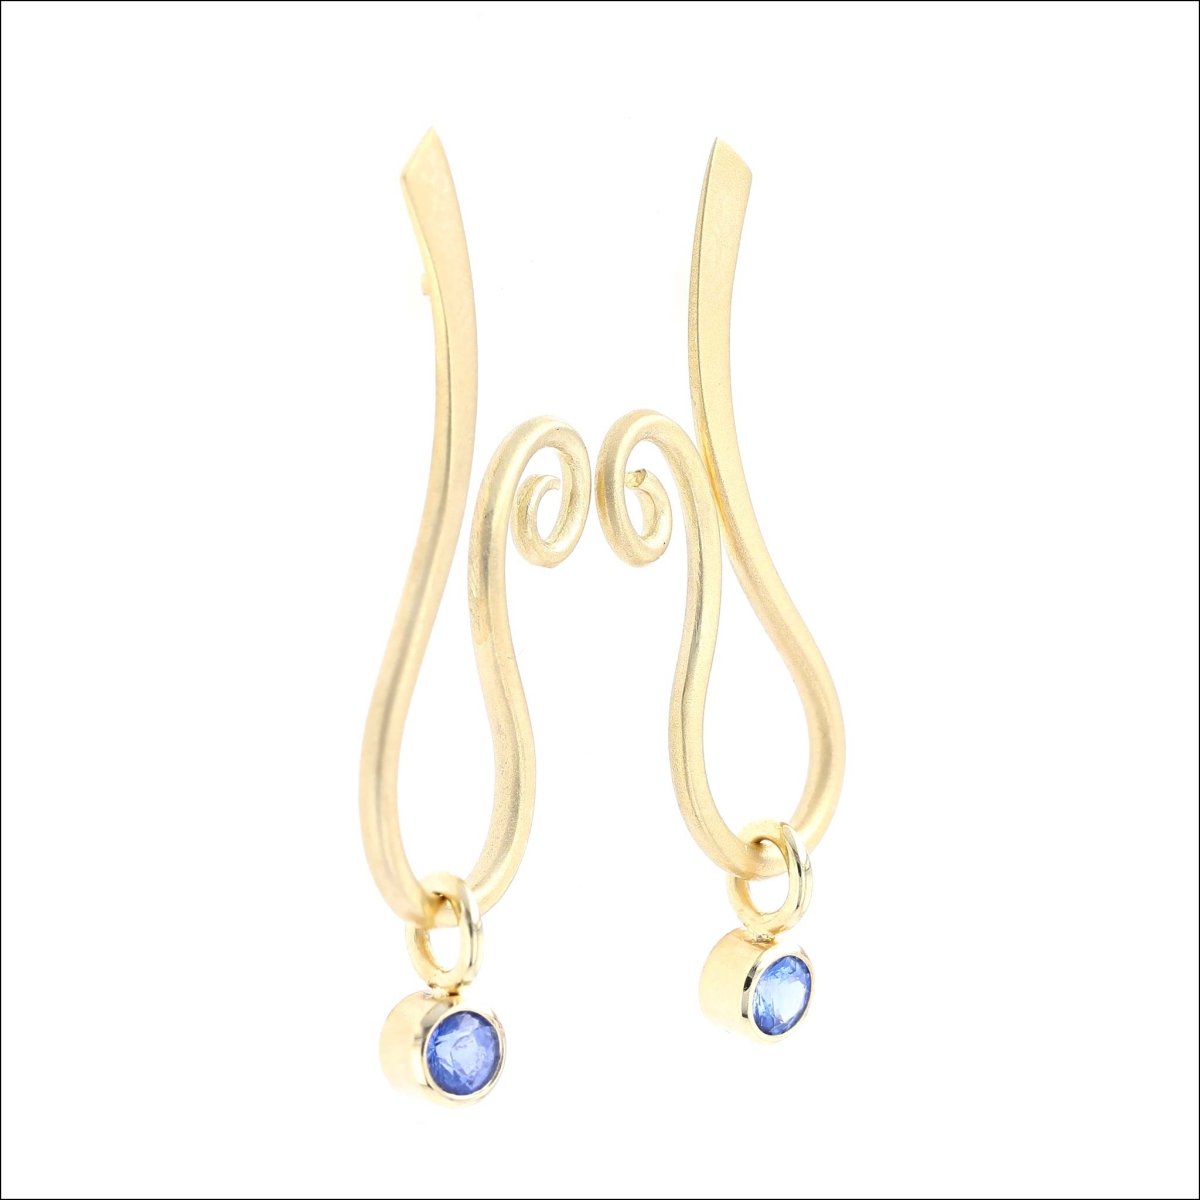 Forged Swirly Drop Earrings 18KY - JewelsmithEarrings